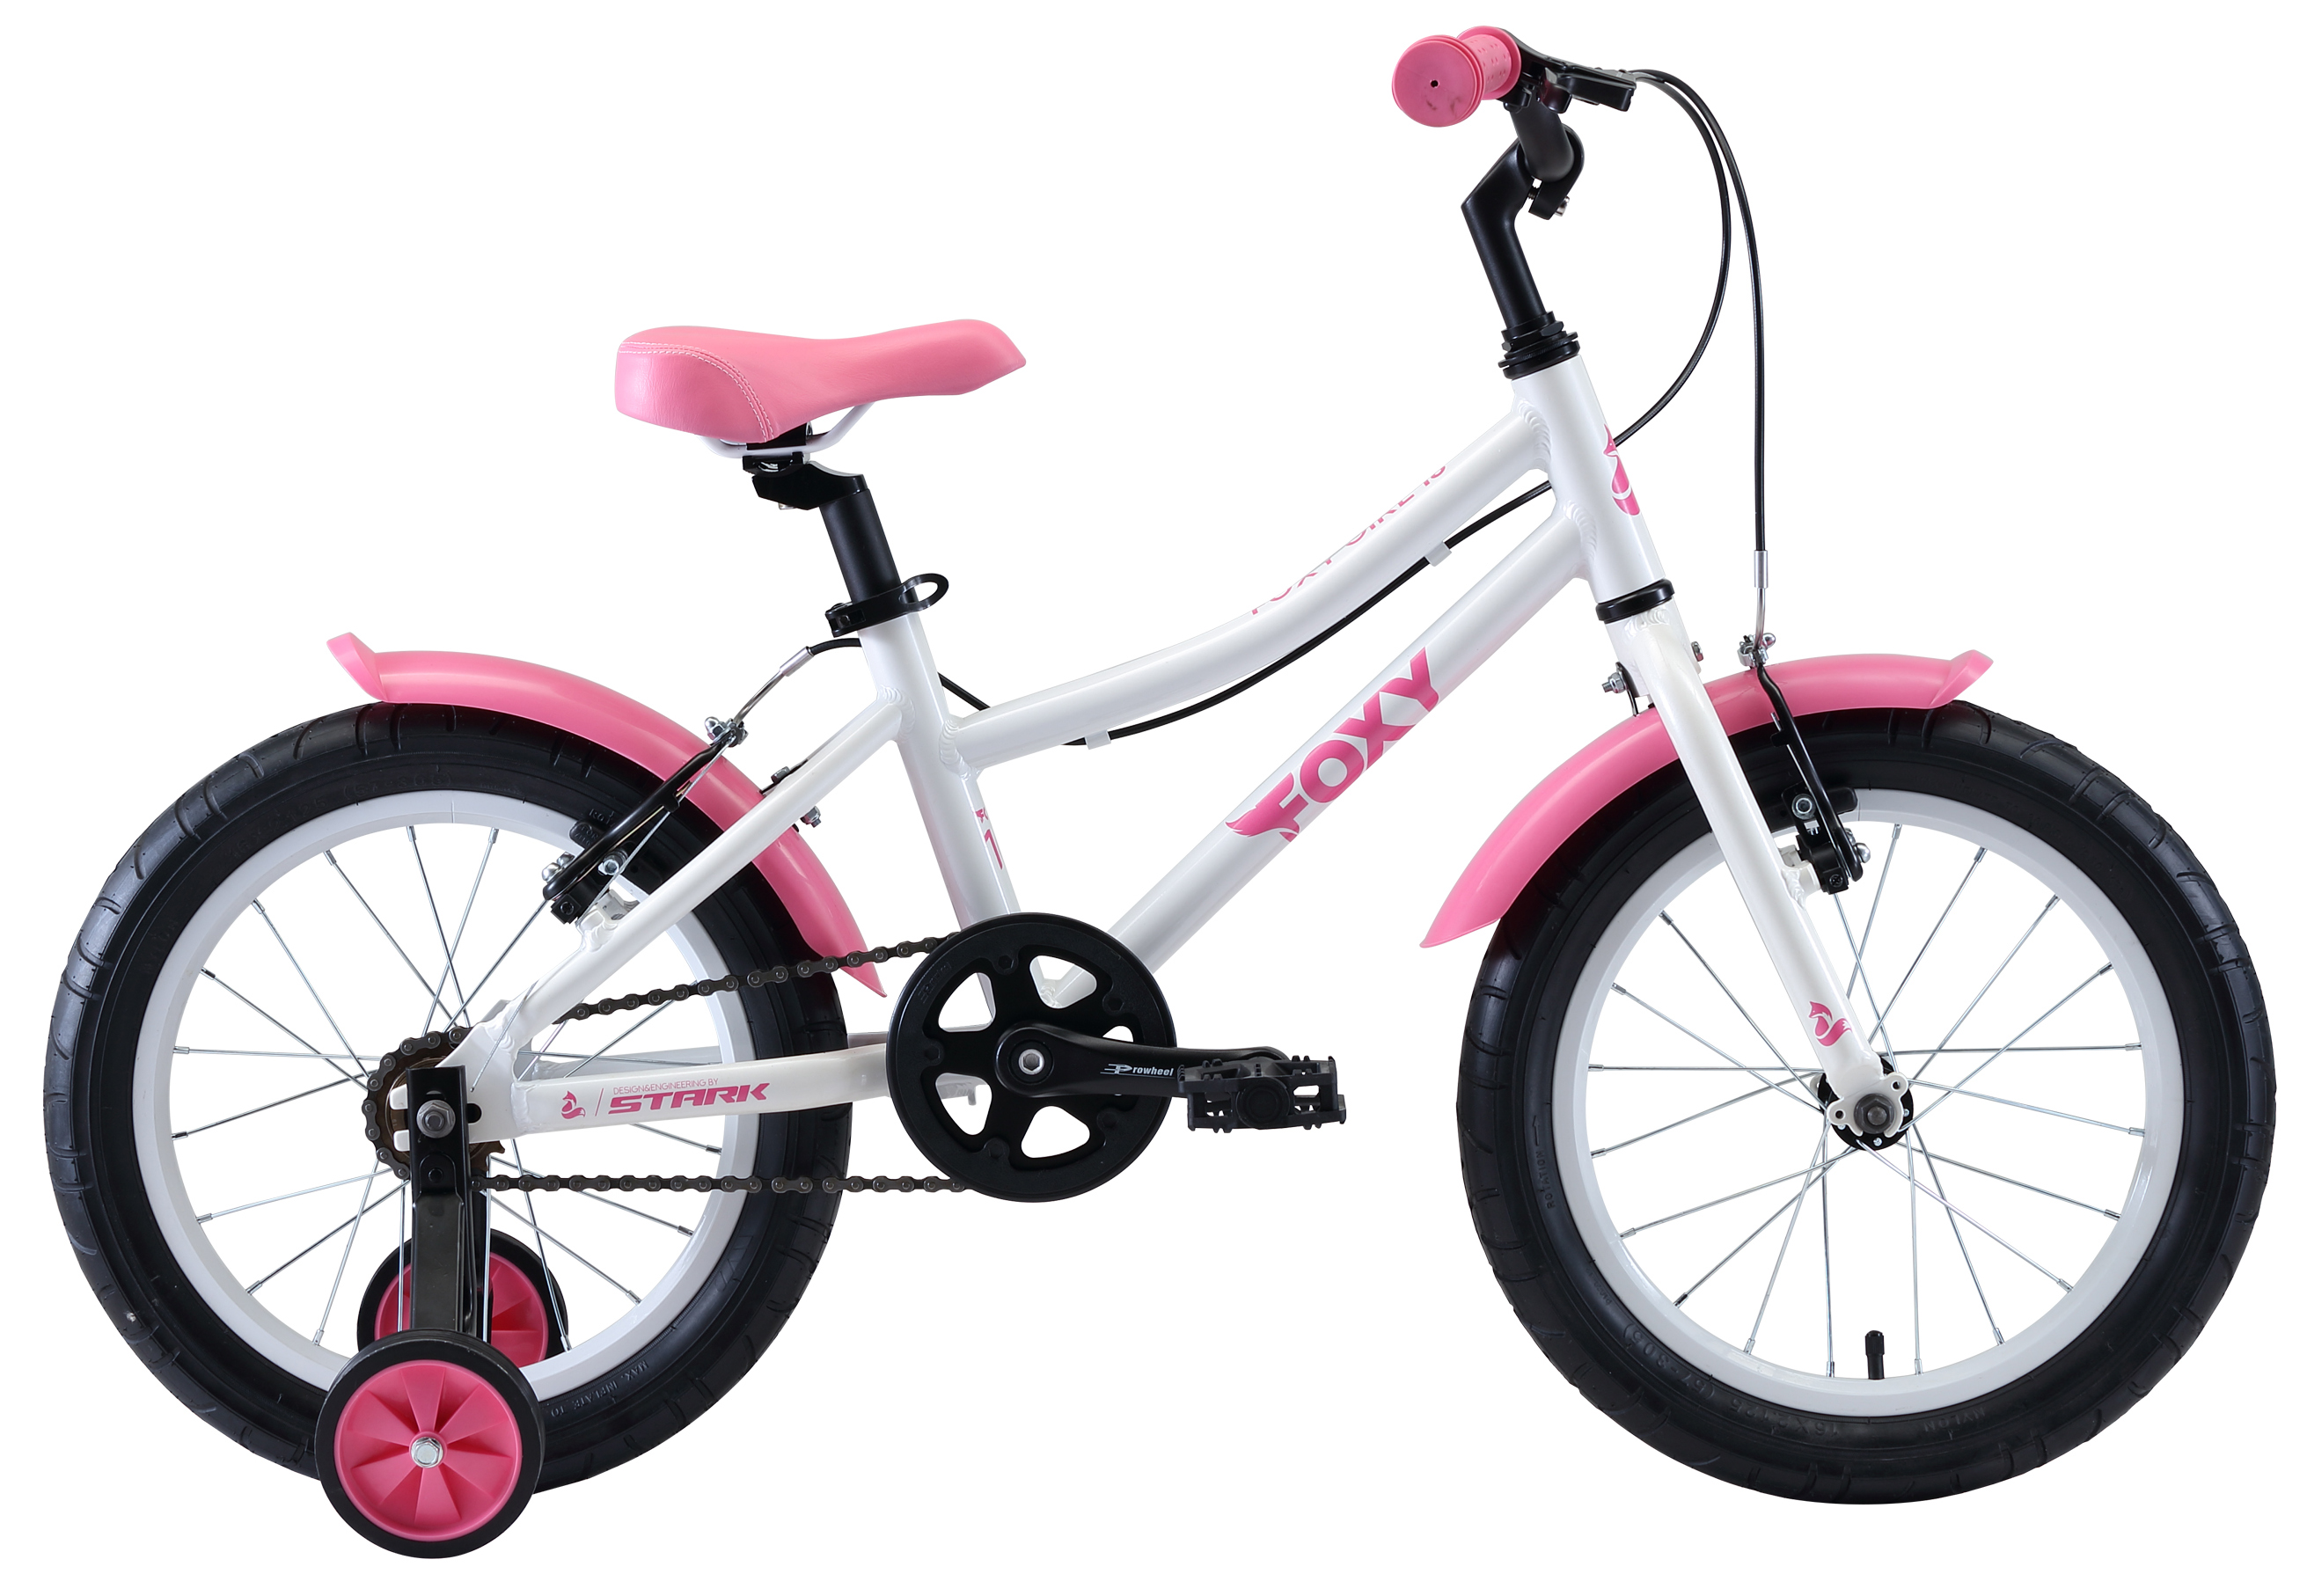  Отзывы о Детском велосипеде Stark Foxy 16 Girl 2020